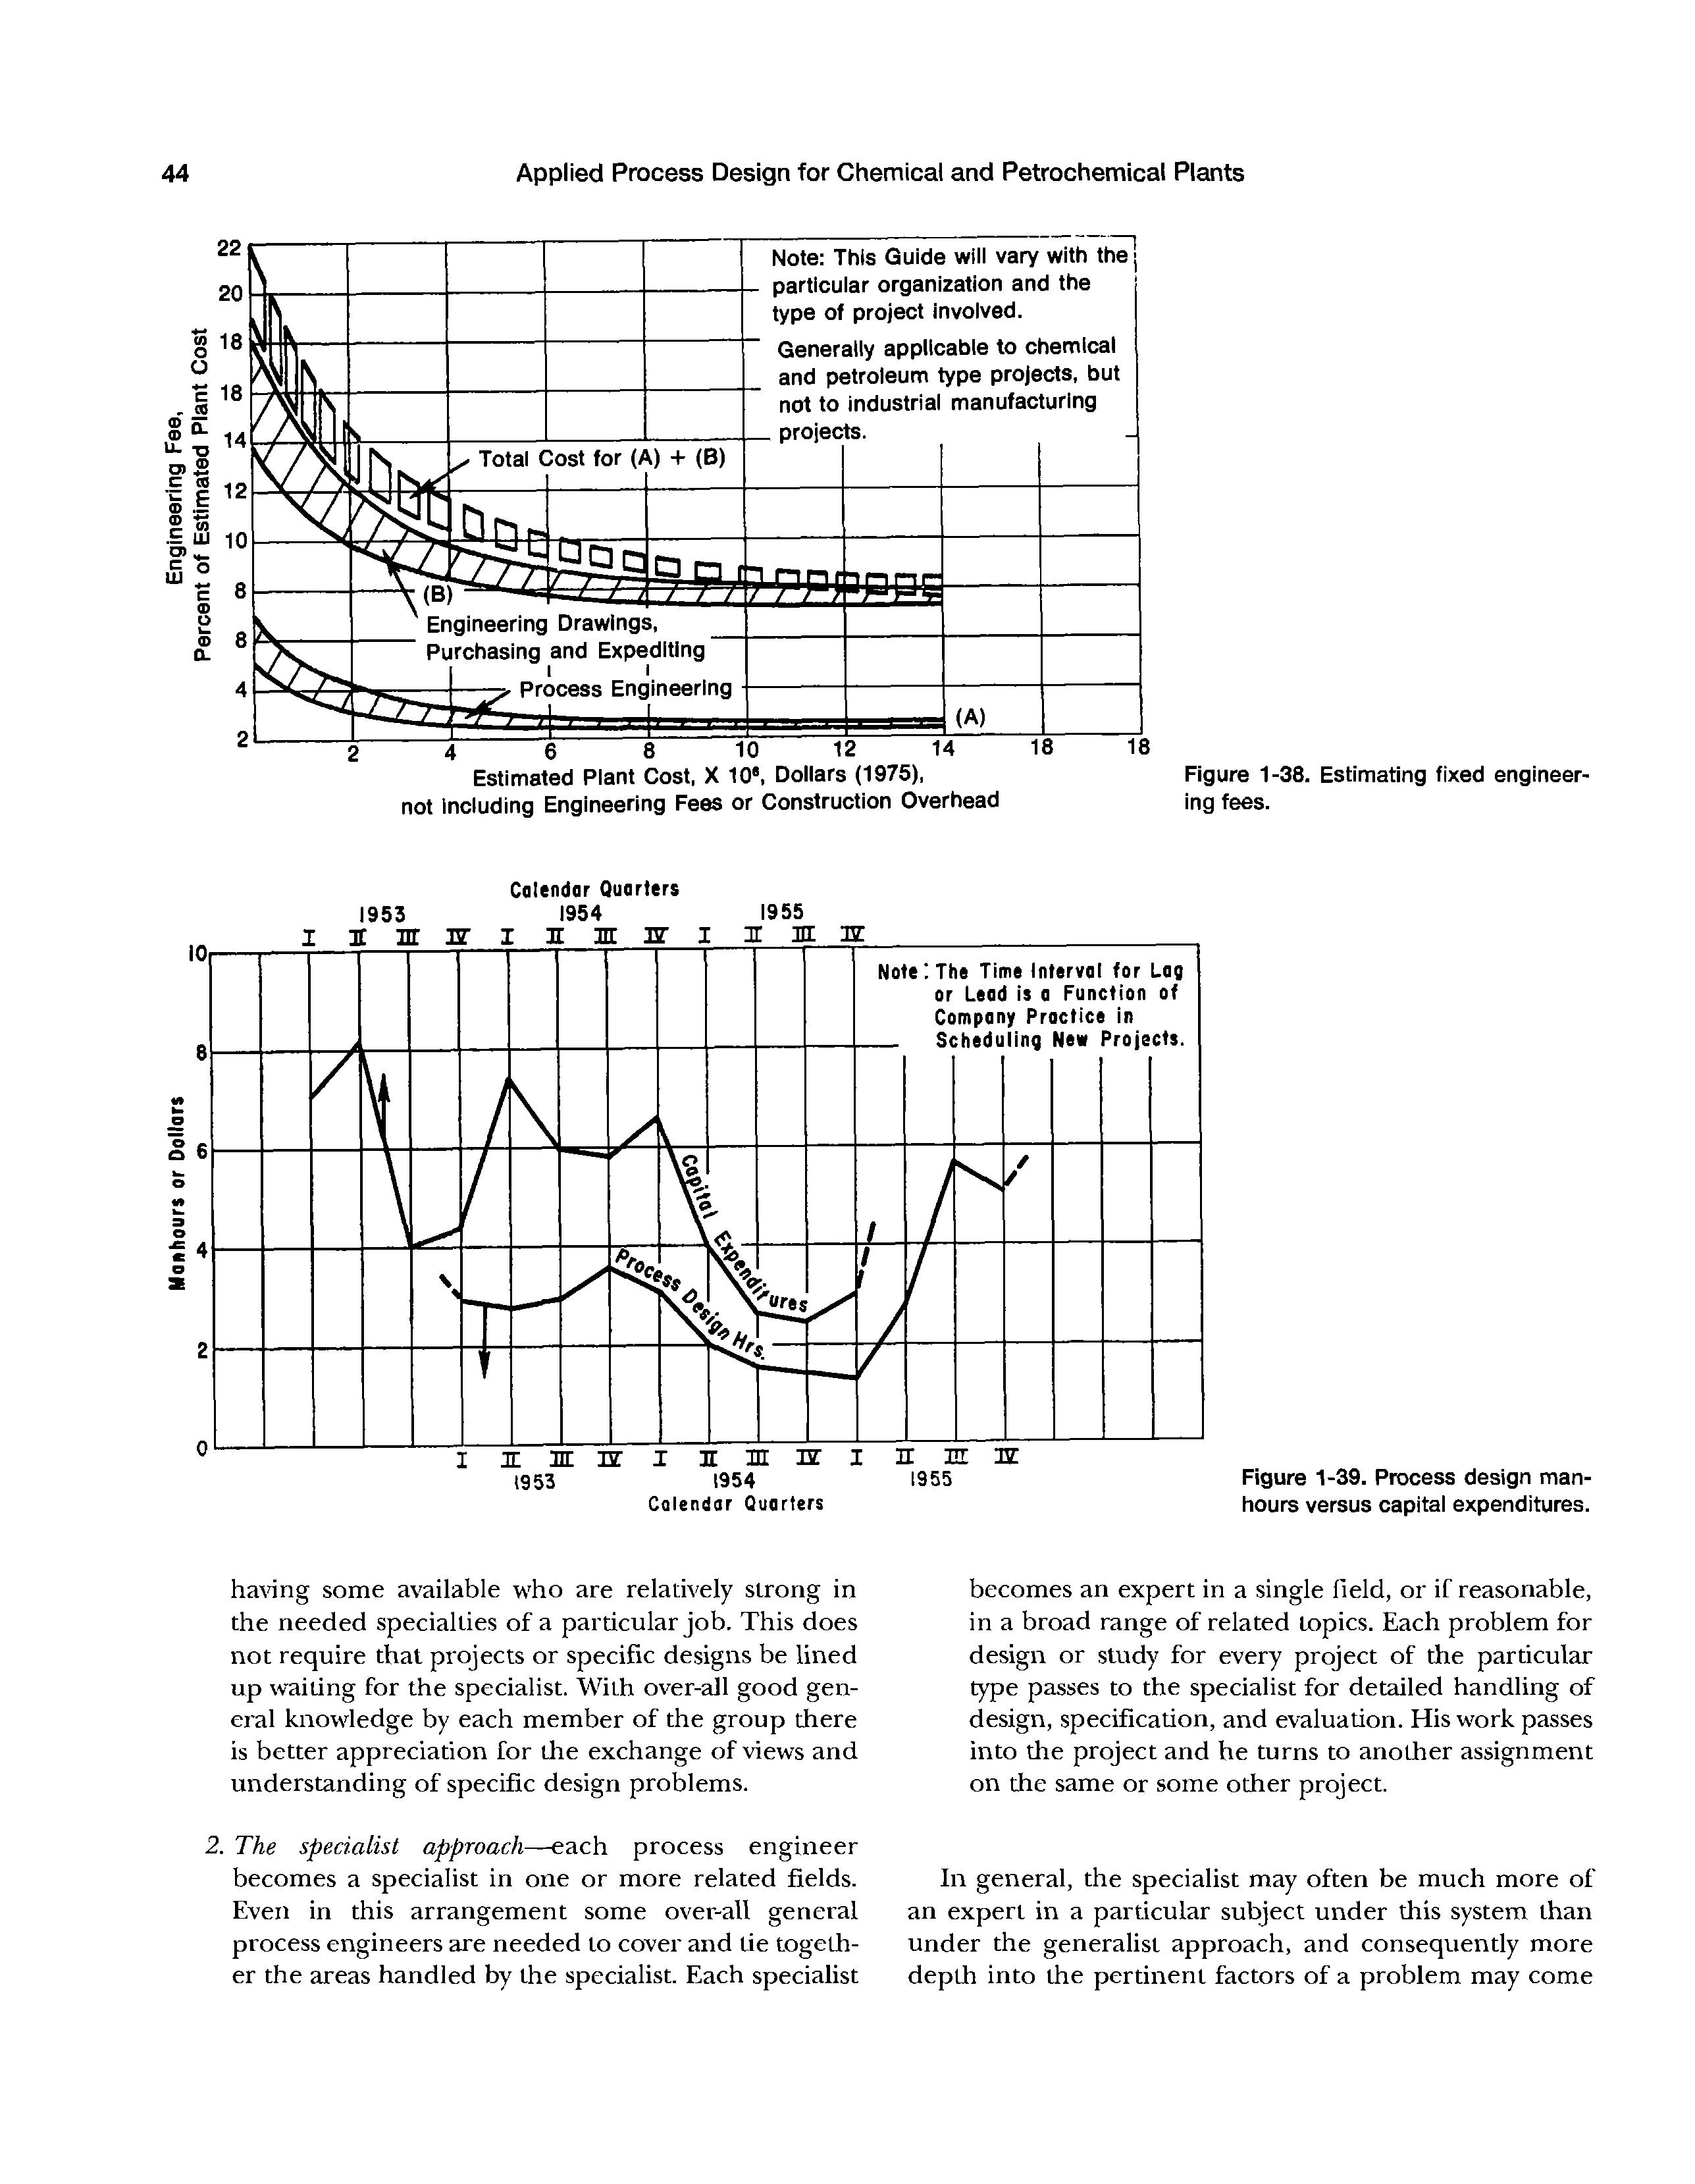 Figure 1-39. Process design manhours versus capital expenditures.